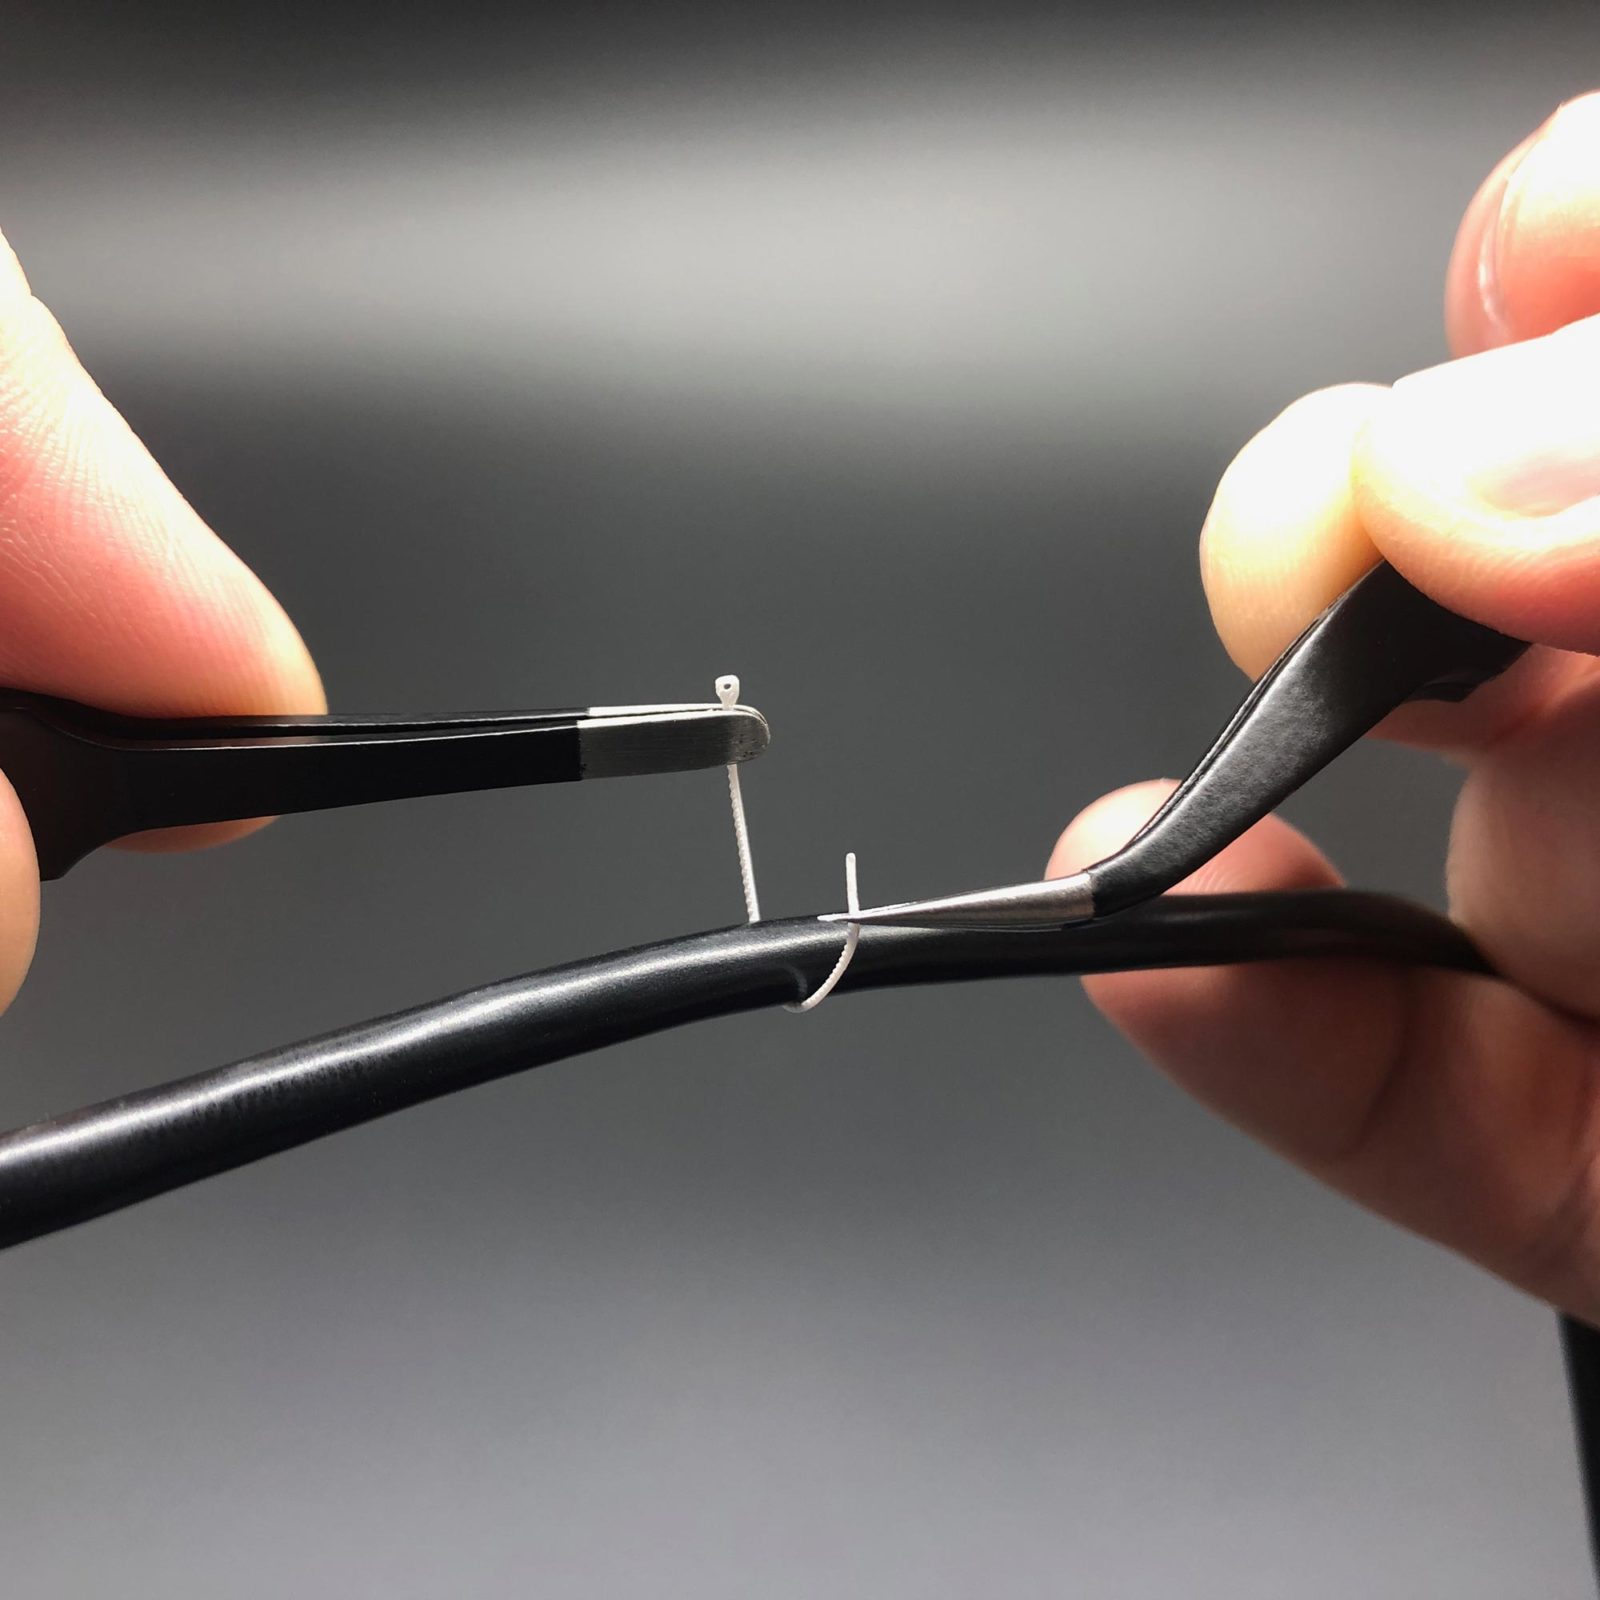 Handling Mini Cable Ties using tweezers